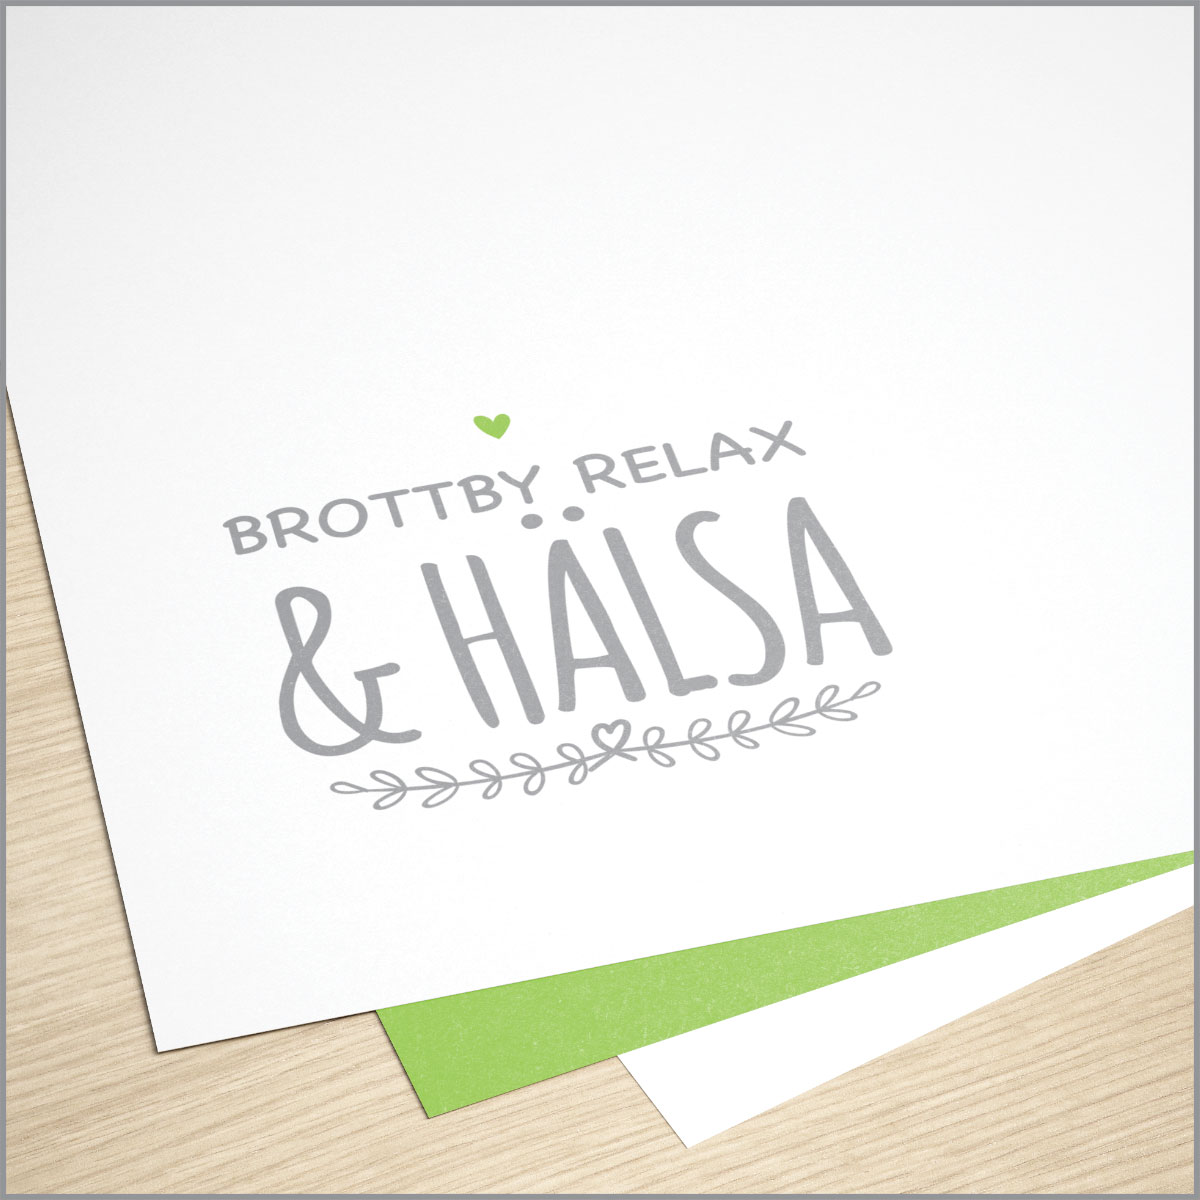 Brottby Relax & Hälsa logo